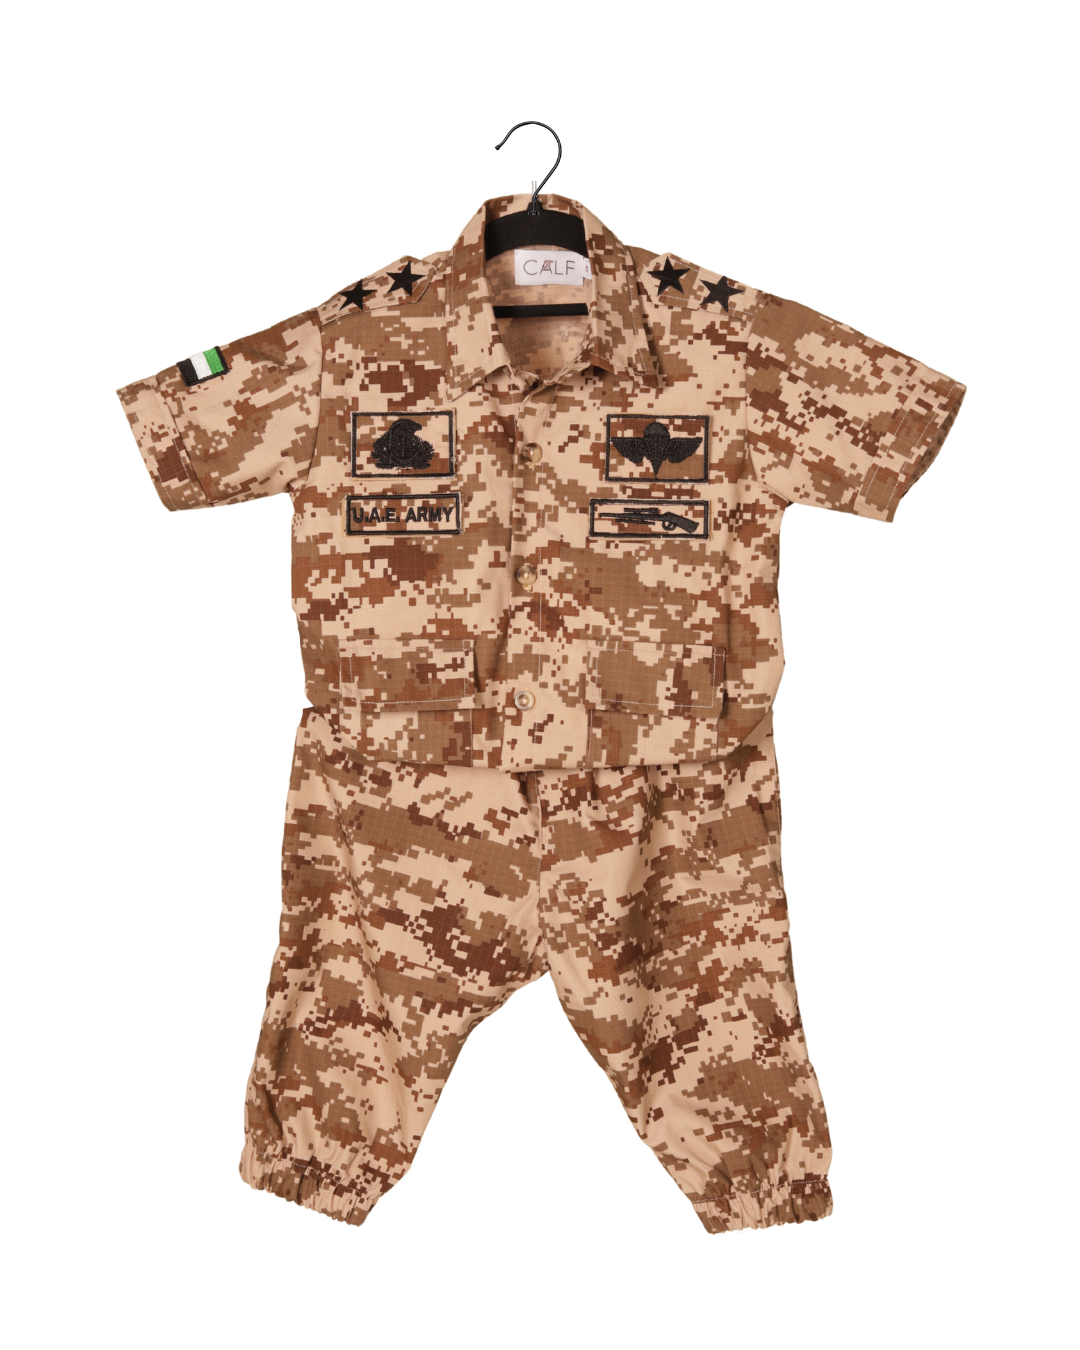 UAE Army Baby uniform